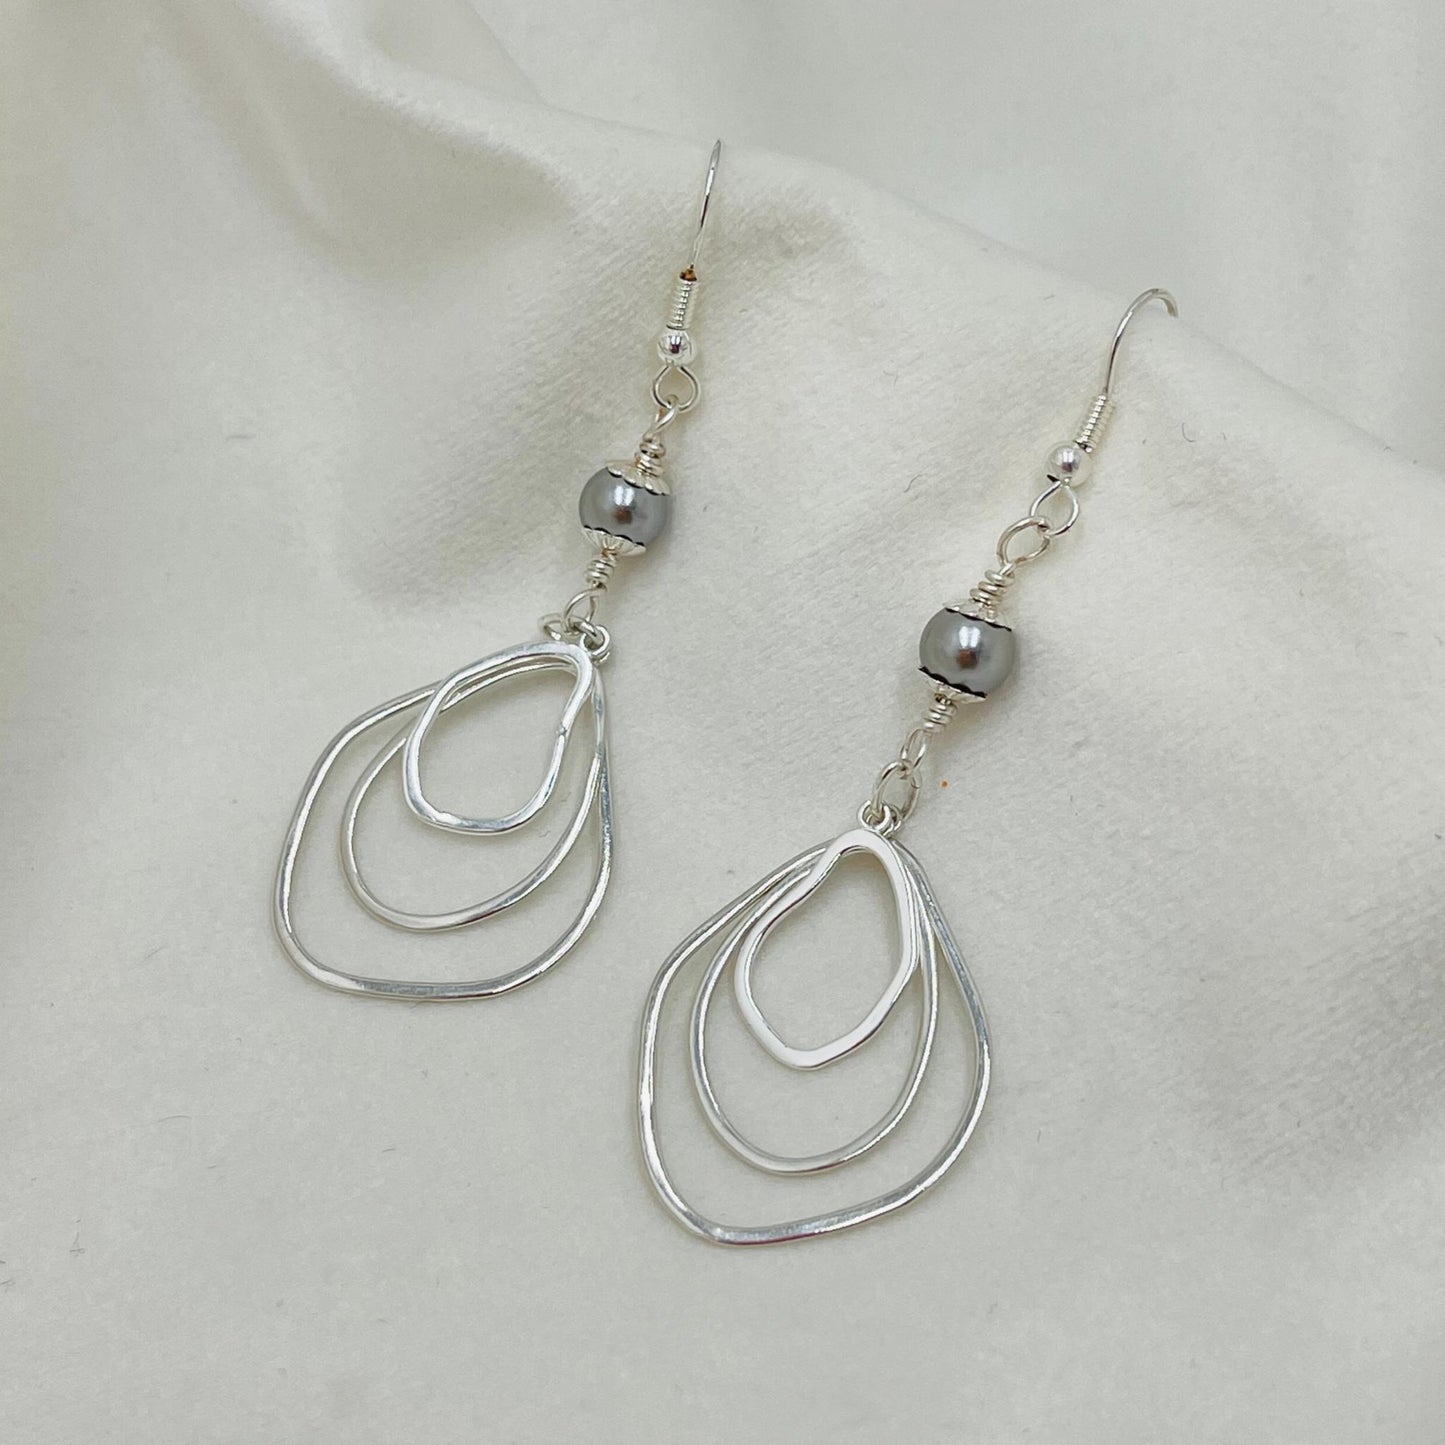 Anastasia Sterling Silver Earrings-Black Pearls-Black and Silver Earrings-Carabella by Cheryl